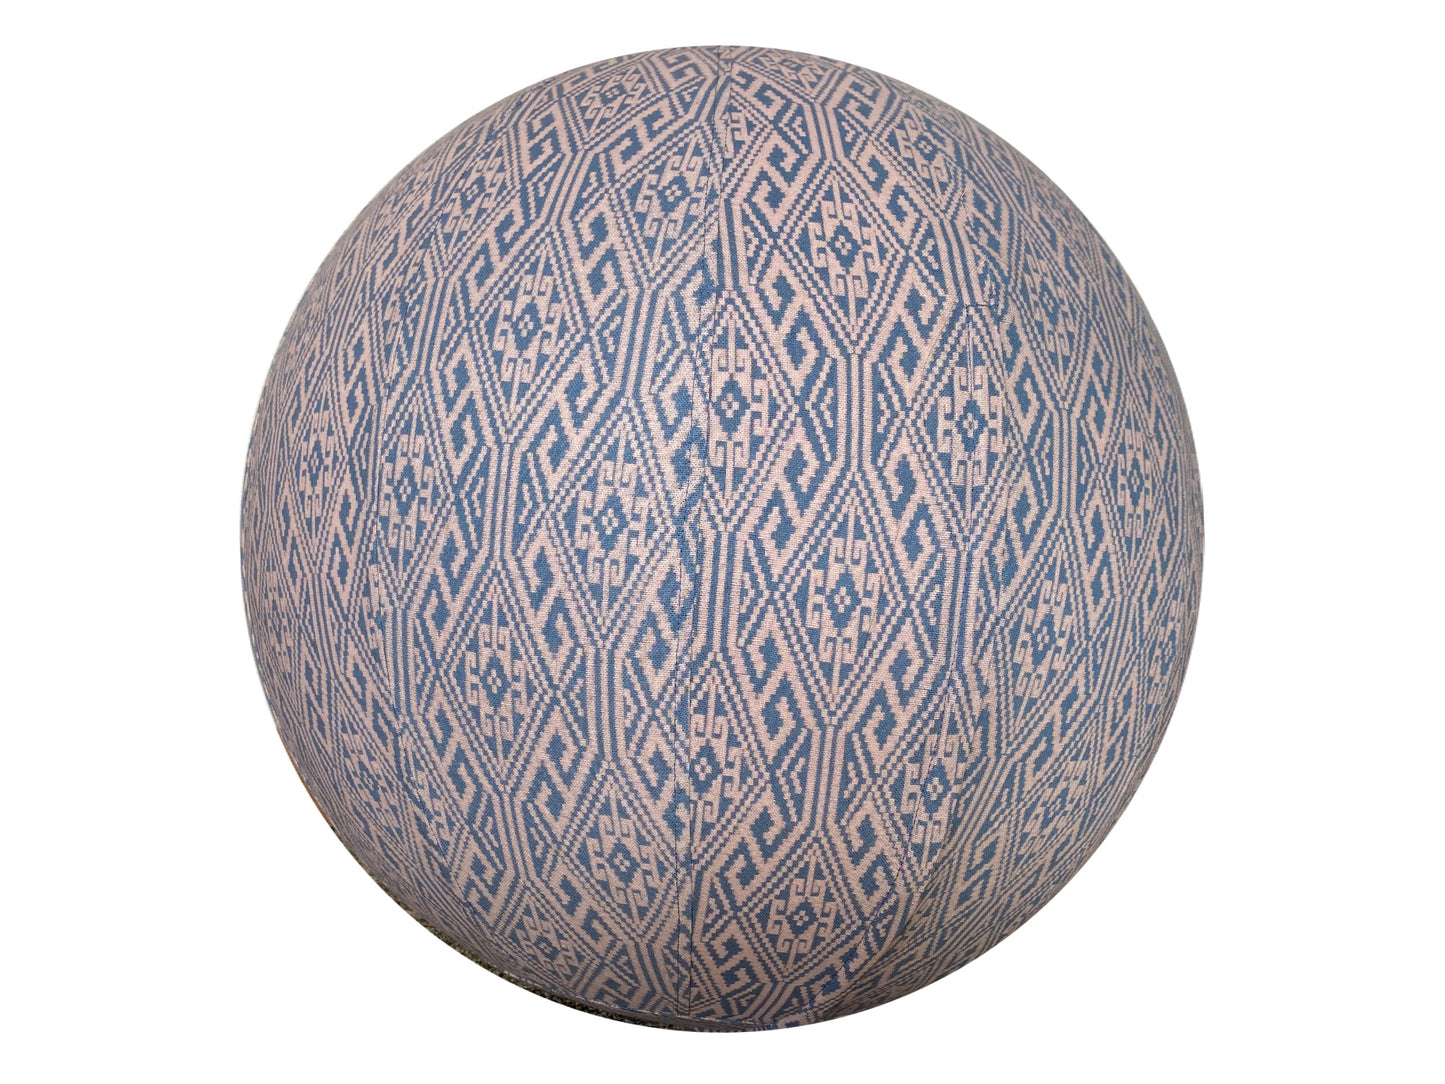 55cm Balance Ball / Yoga Ball Cover: Aztec Grey Fade